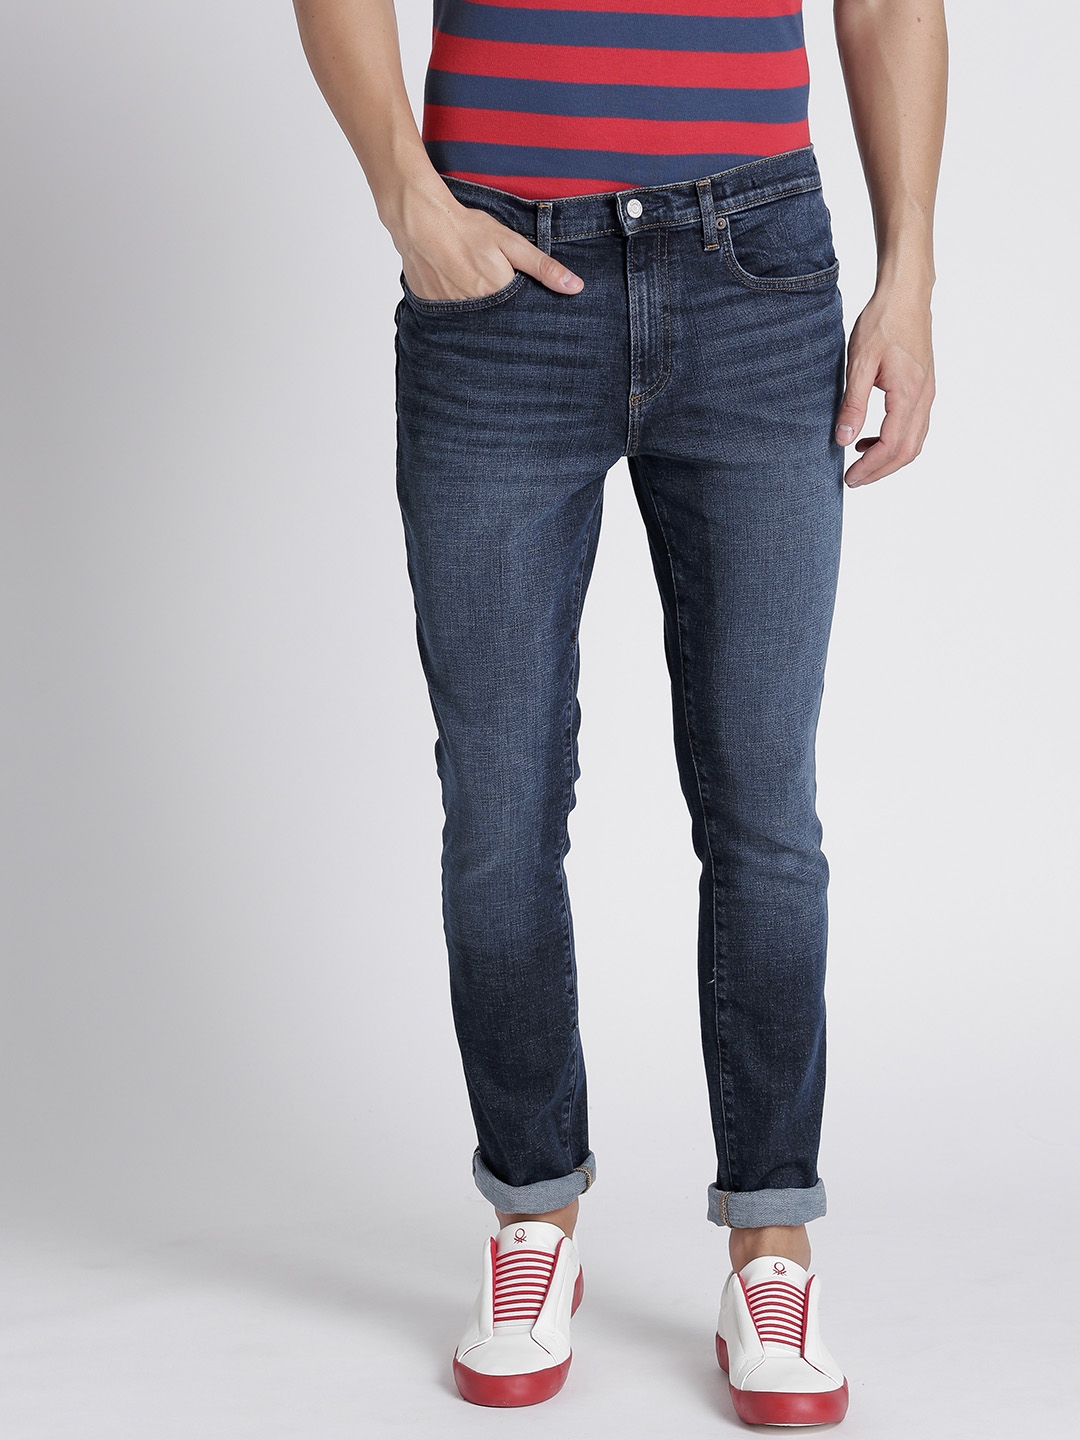 gap skinny mens jeans